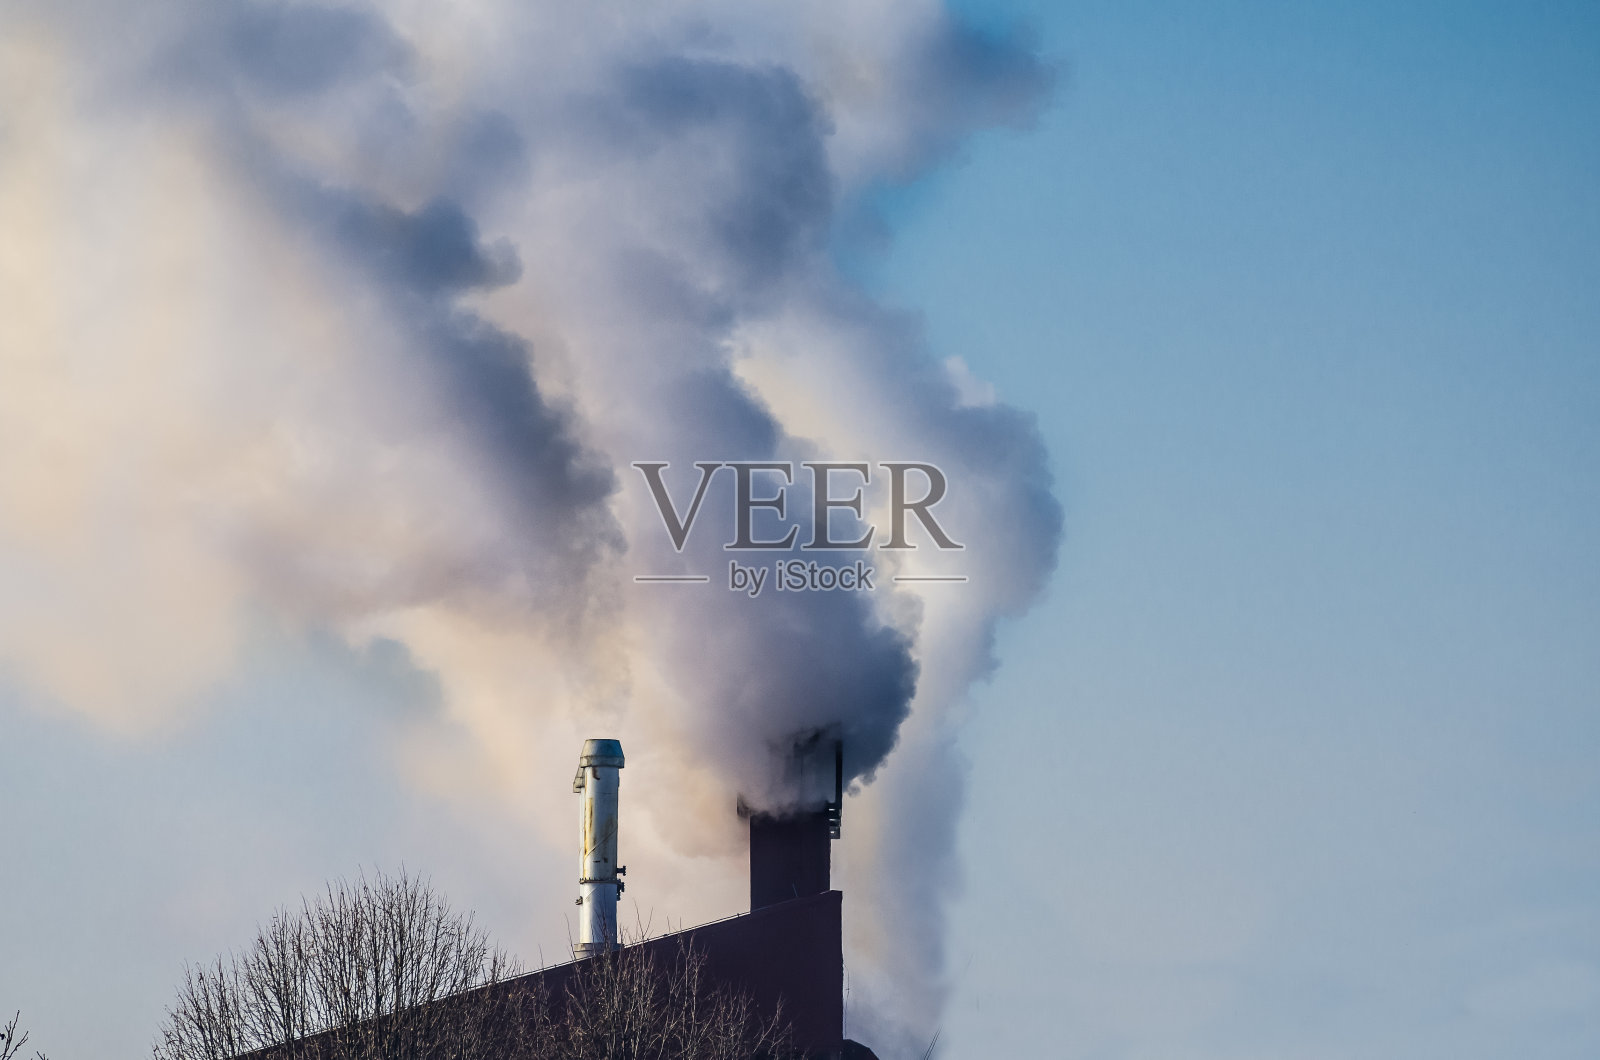 污染。多个煤炭化石燃料发电厂的烟囱排放二氧化碳污染。污染环境。照片摄影图片